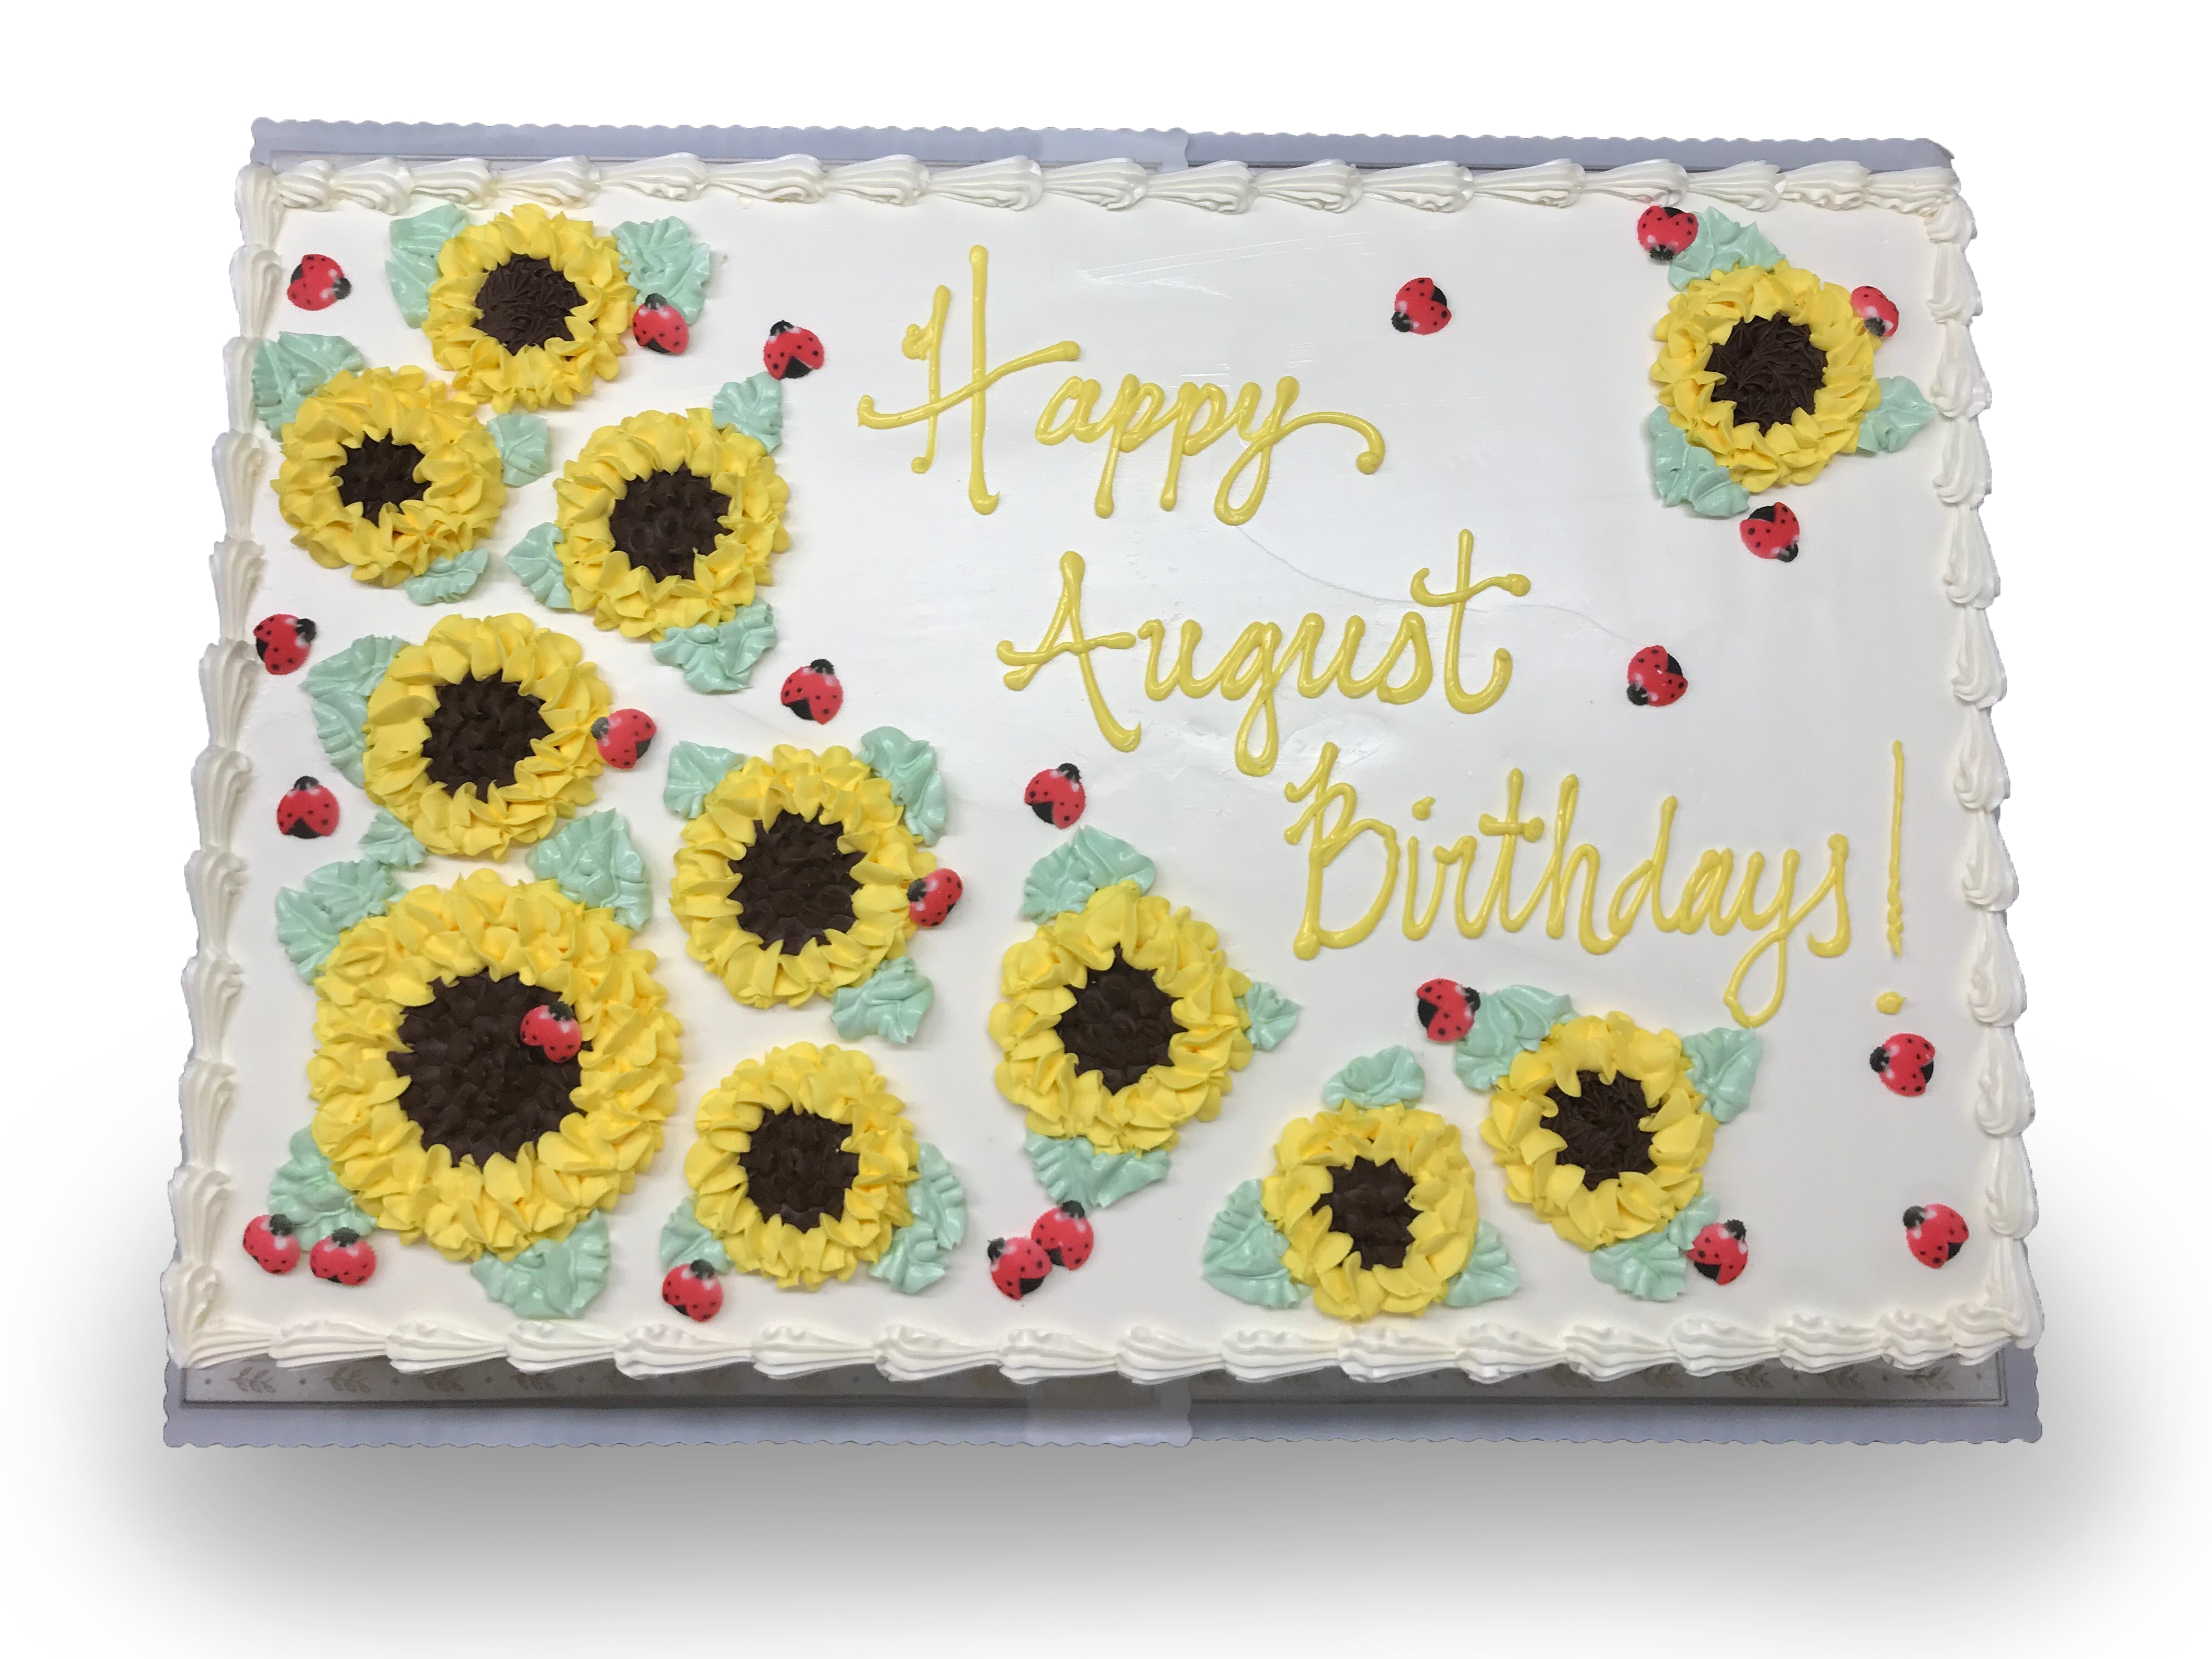 AB005. Sunflowers and ladybugs sheetcake